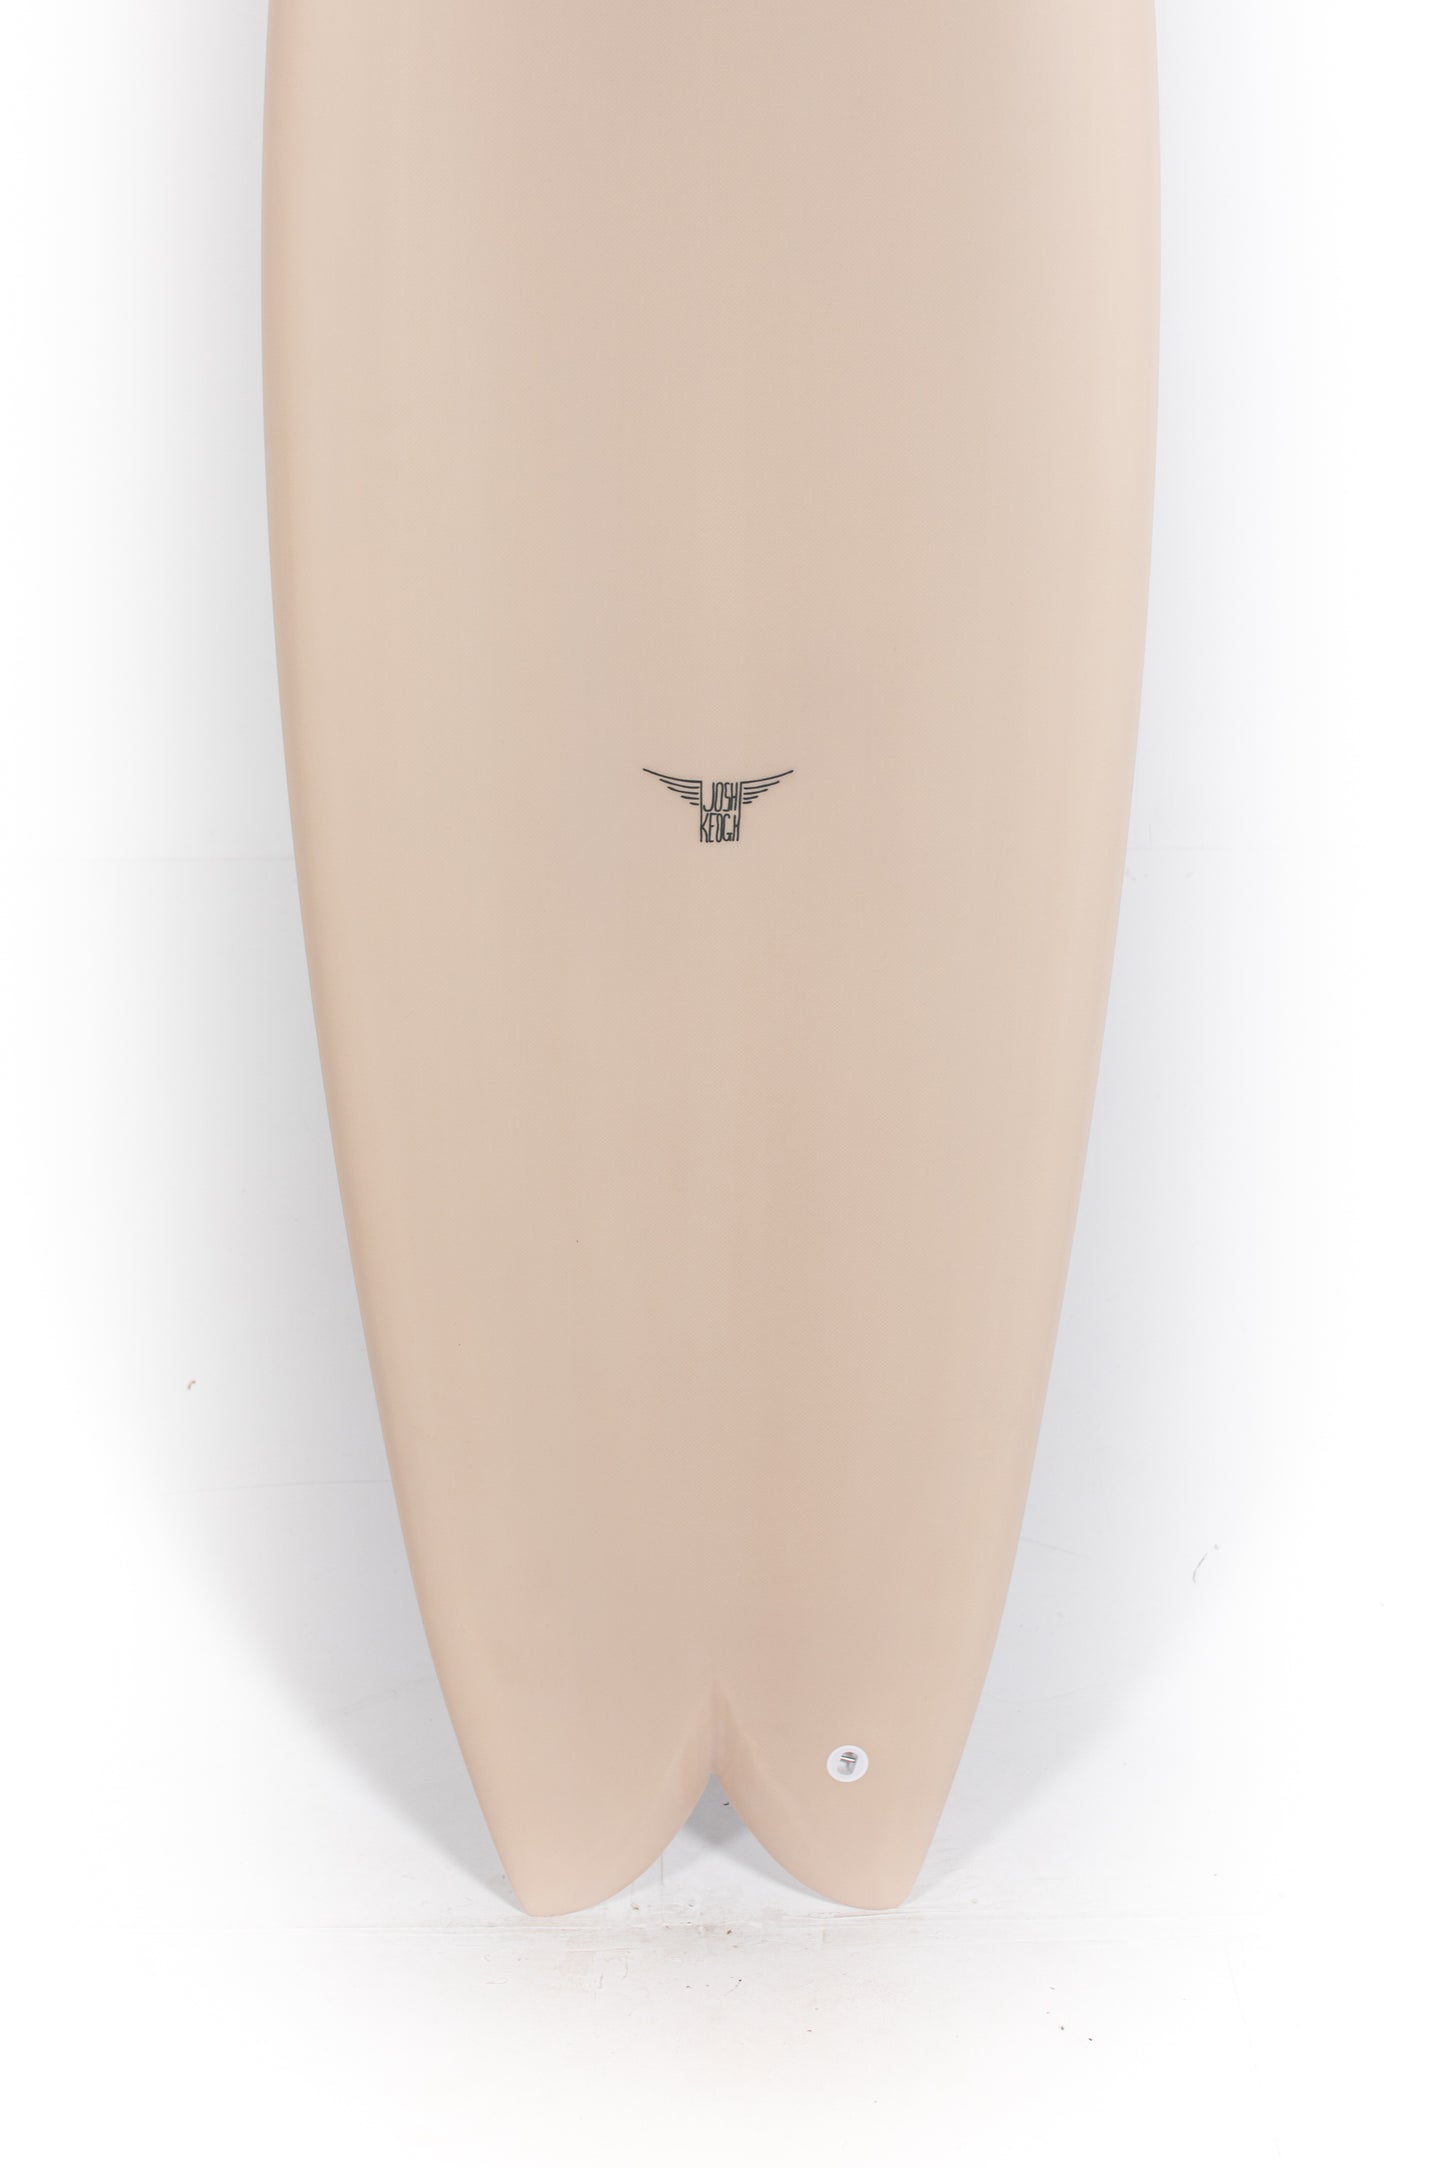 
                  
                    Pukas Surf Shop - Joshua Keogh Surfboard - MONAD by Joshua Keogh - 5'11" x 21 x 2 5/8 - MONADTWIN511
                  
                